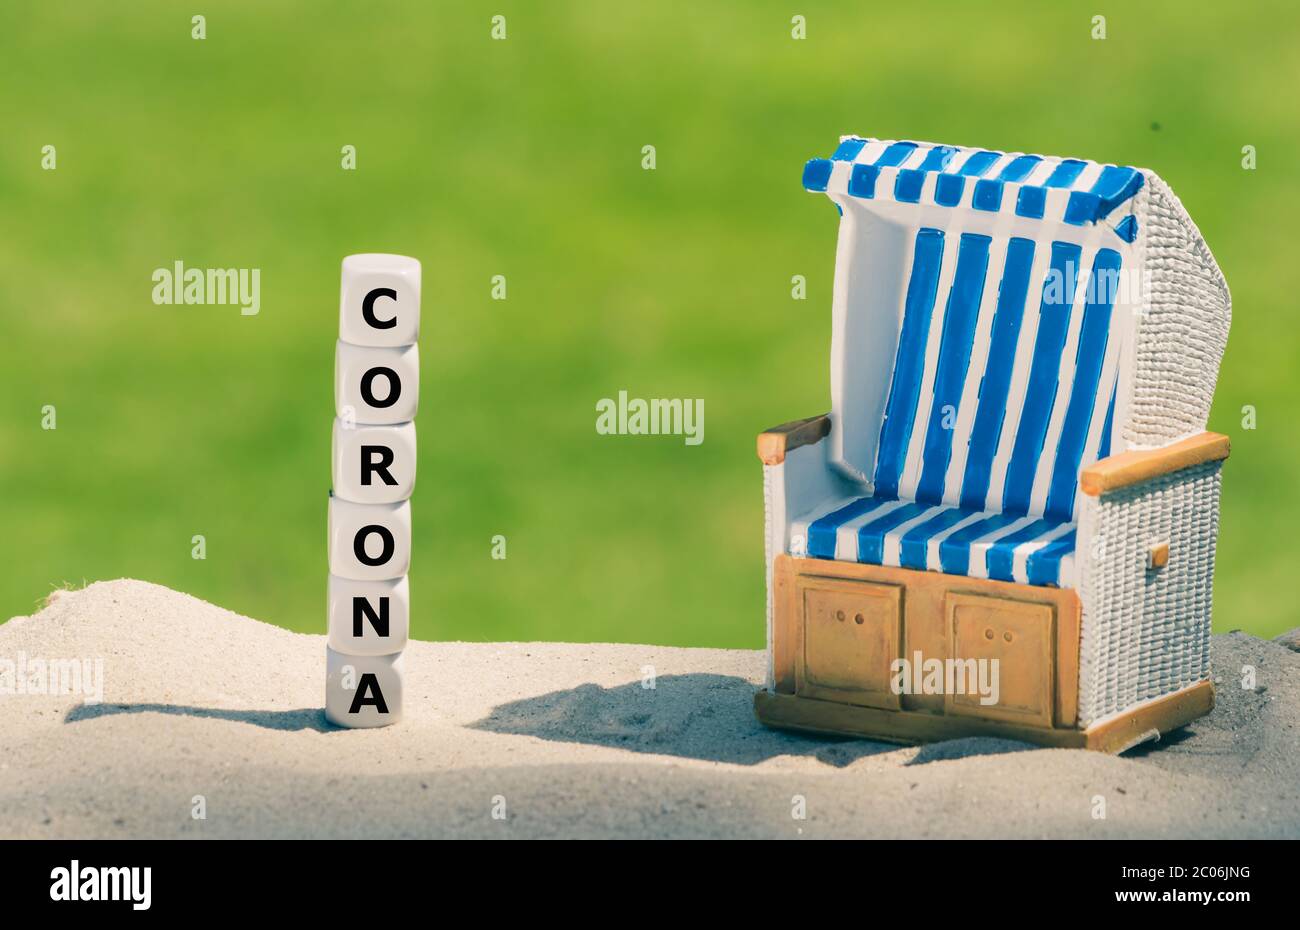 Simbolo per le vacanze durante la crisi della corona. I dadi formano la parola 'corona' accanto ad una sedia da spiaggia. Foto Stock